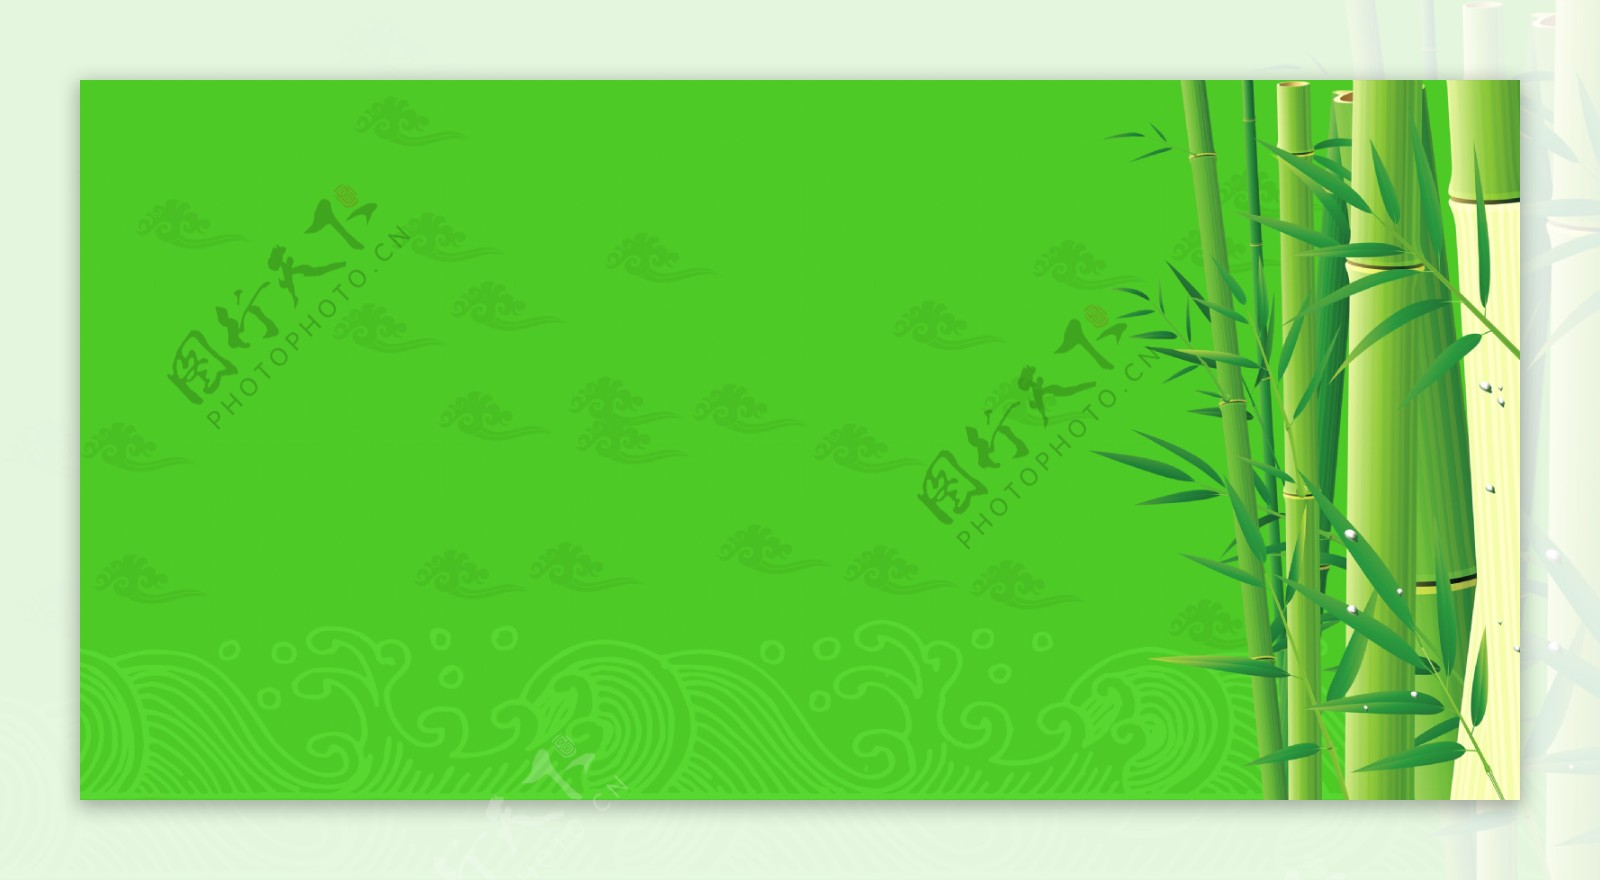 绿色竹子主题背景图